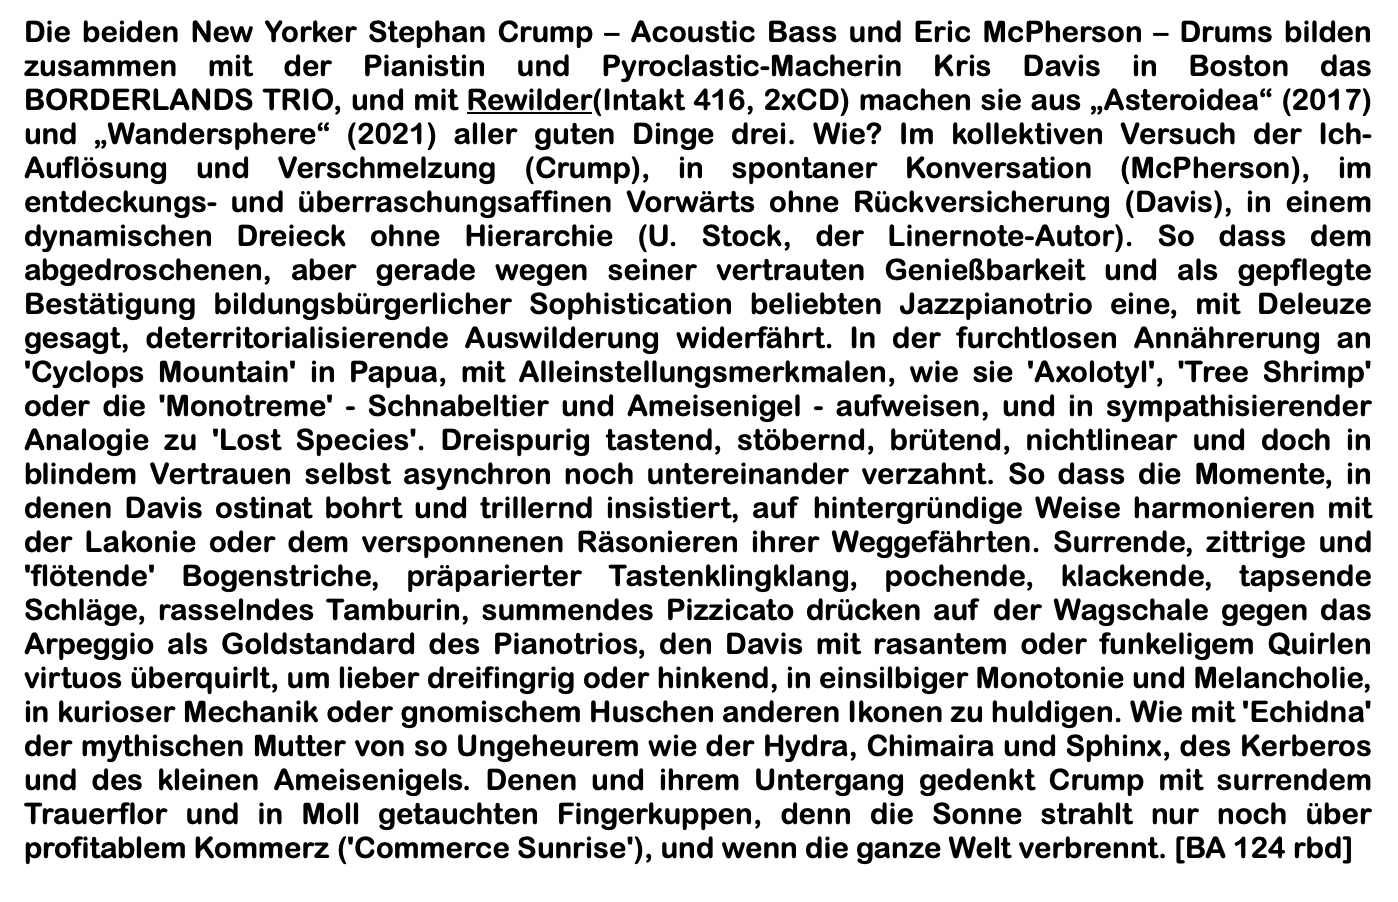 Die beiden New Yorker Stephan Crump – Acoustic Bass und Eric McPherson – Drums bilden zusammen mit der Pianistin und Pyroclastic-Macherin Kris Davis in Boston das BORDERLANDS TRIO, und mit Rewilder(Intakt 416, 2xCD) machen sie aus „Asteroidea“ (2017) und „Wandersphere“ (2021) aller guten Dinge drei. Wie? Im kollektiven Versuch der Ich-Auflösung und Verschmelzung (Crump), in spontaner Konversation (McPherson), im entdeckungs- und überraschungsaffinen Vorwärts ohne Rückversicherung (Davis), in einem dynamischen Dreieck ohne Hierarchie (U. Stock, der Linernote-Autor).